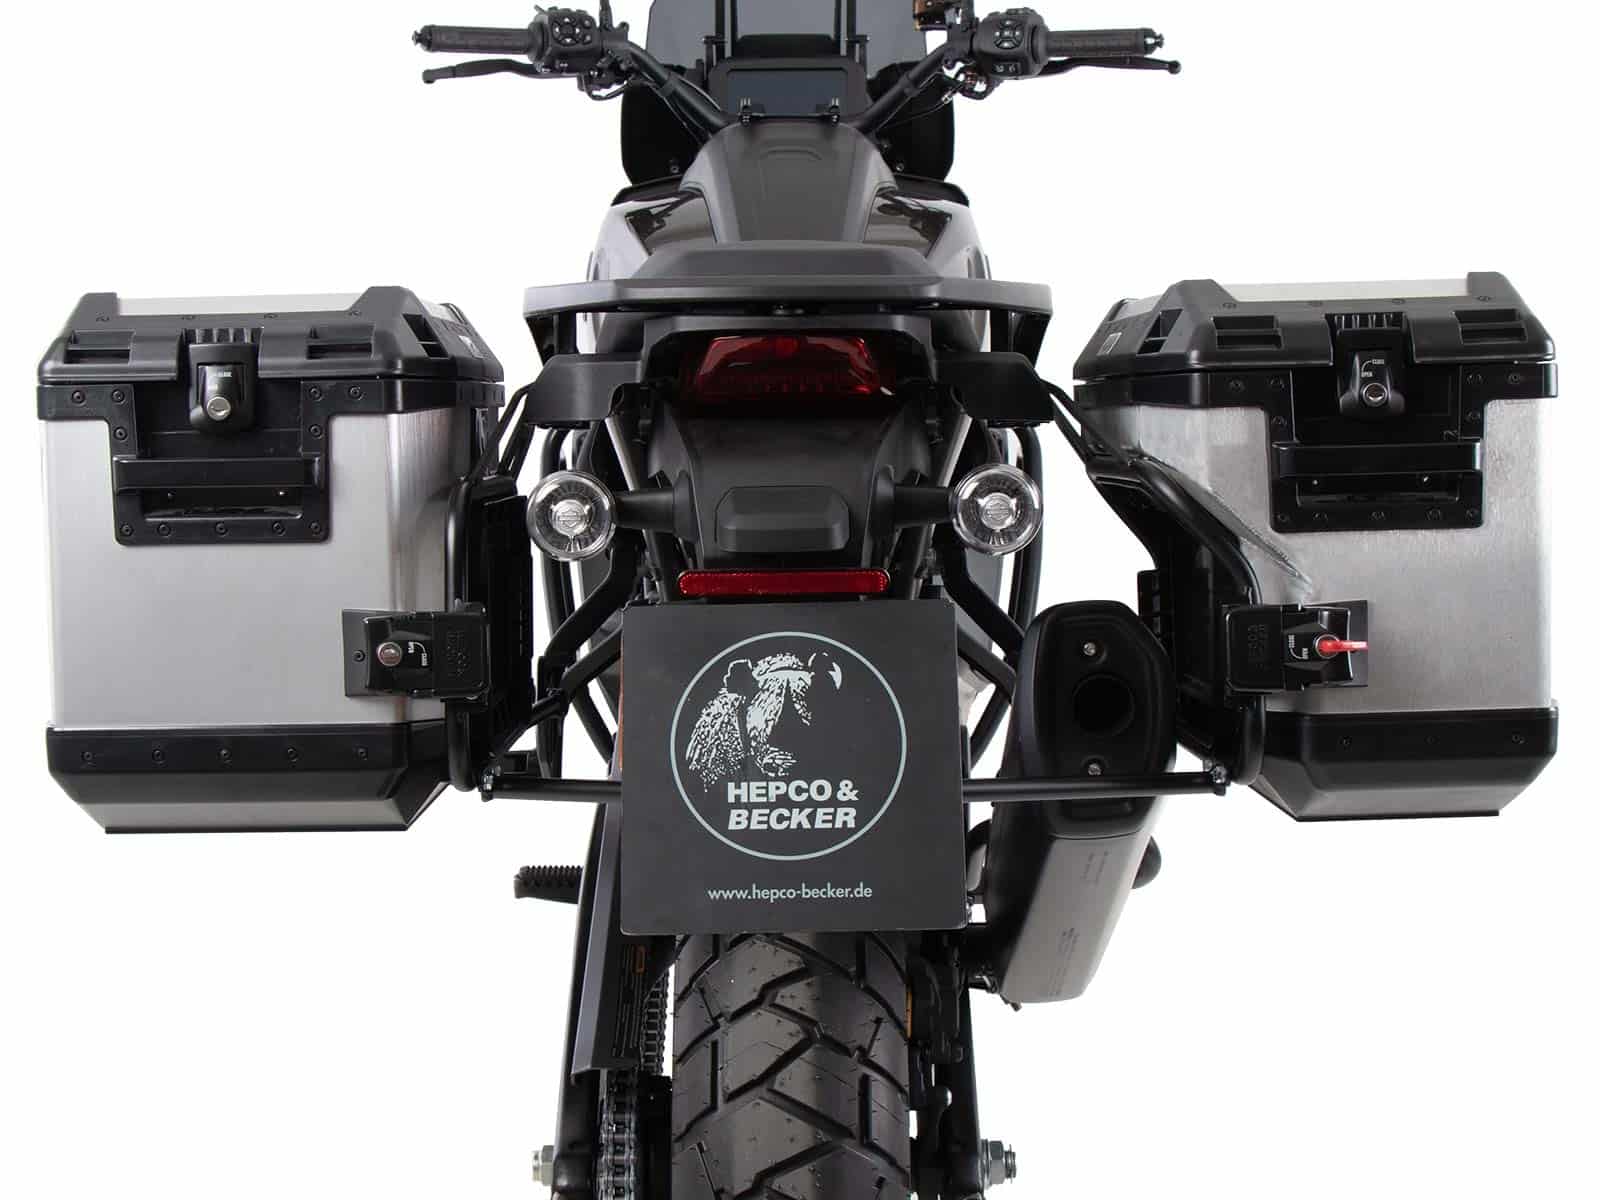 Kofferträgerset Cutout schwarz inkl. Xplorer Cutout silber Kofferset für Harley Davidson Pan America (2021-)